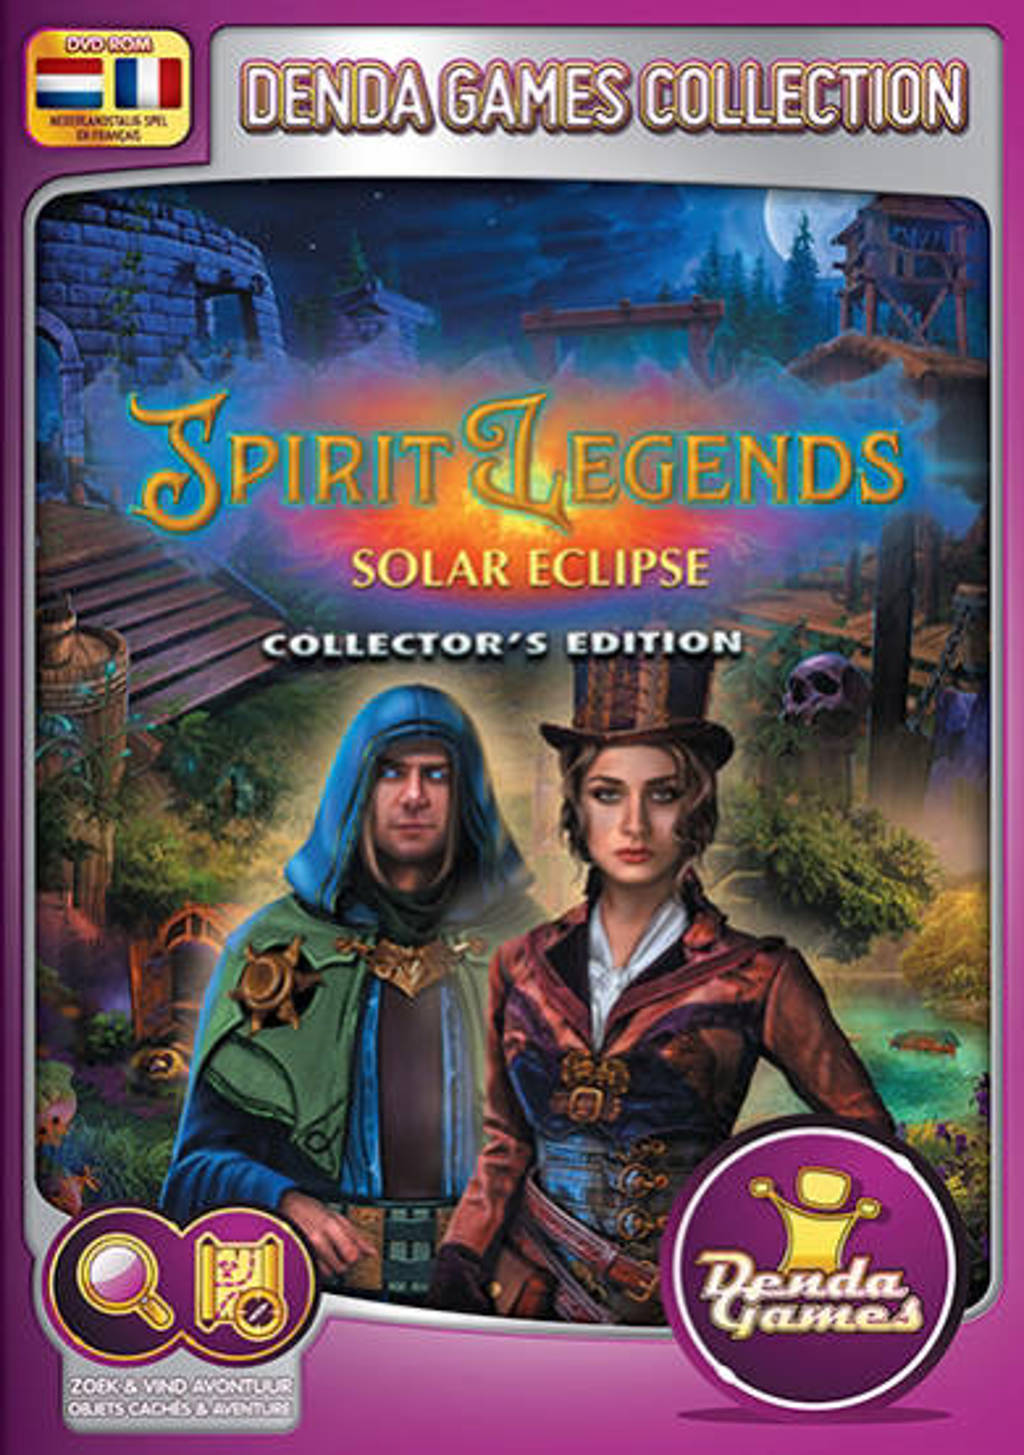 Spirit legends - Solar eclipse (Collectors edition) (PC)